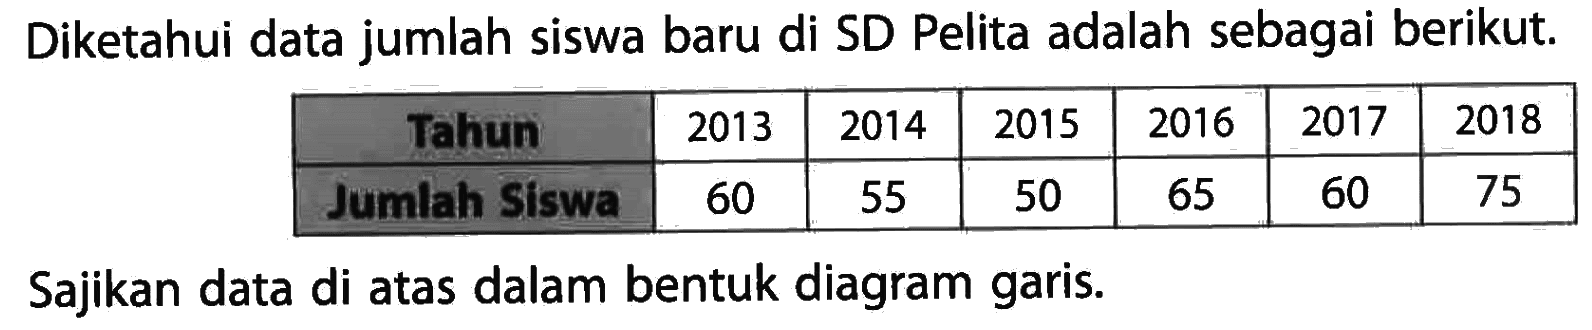 Diketahui data jumlah siswa baru di SD pelita adalah sebagai berikut.
 Tahun 2013 2014 2015 2016 2017 2018
 Jumlah Siswa 60 55 50 65 60 75
 Sajikan data di atas dalam bentuk diagram garis.